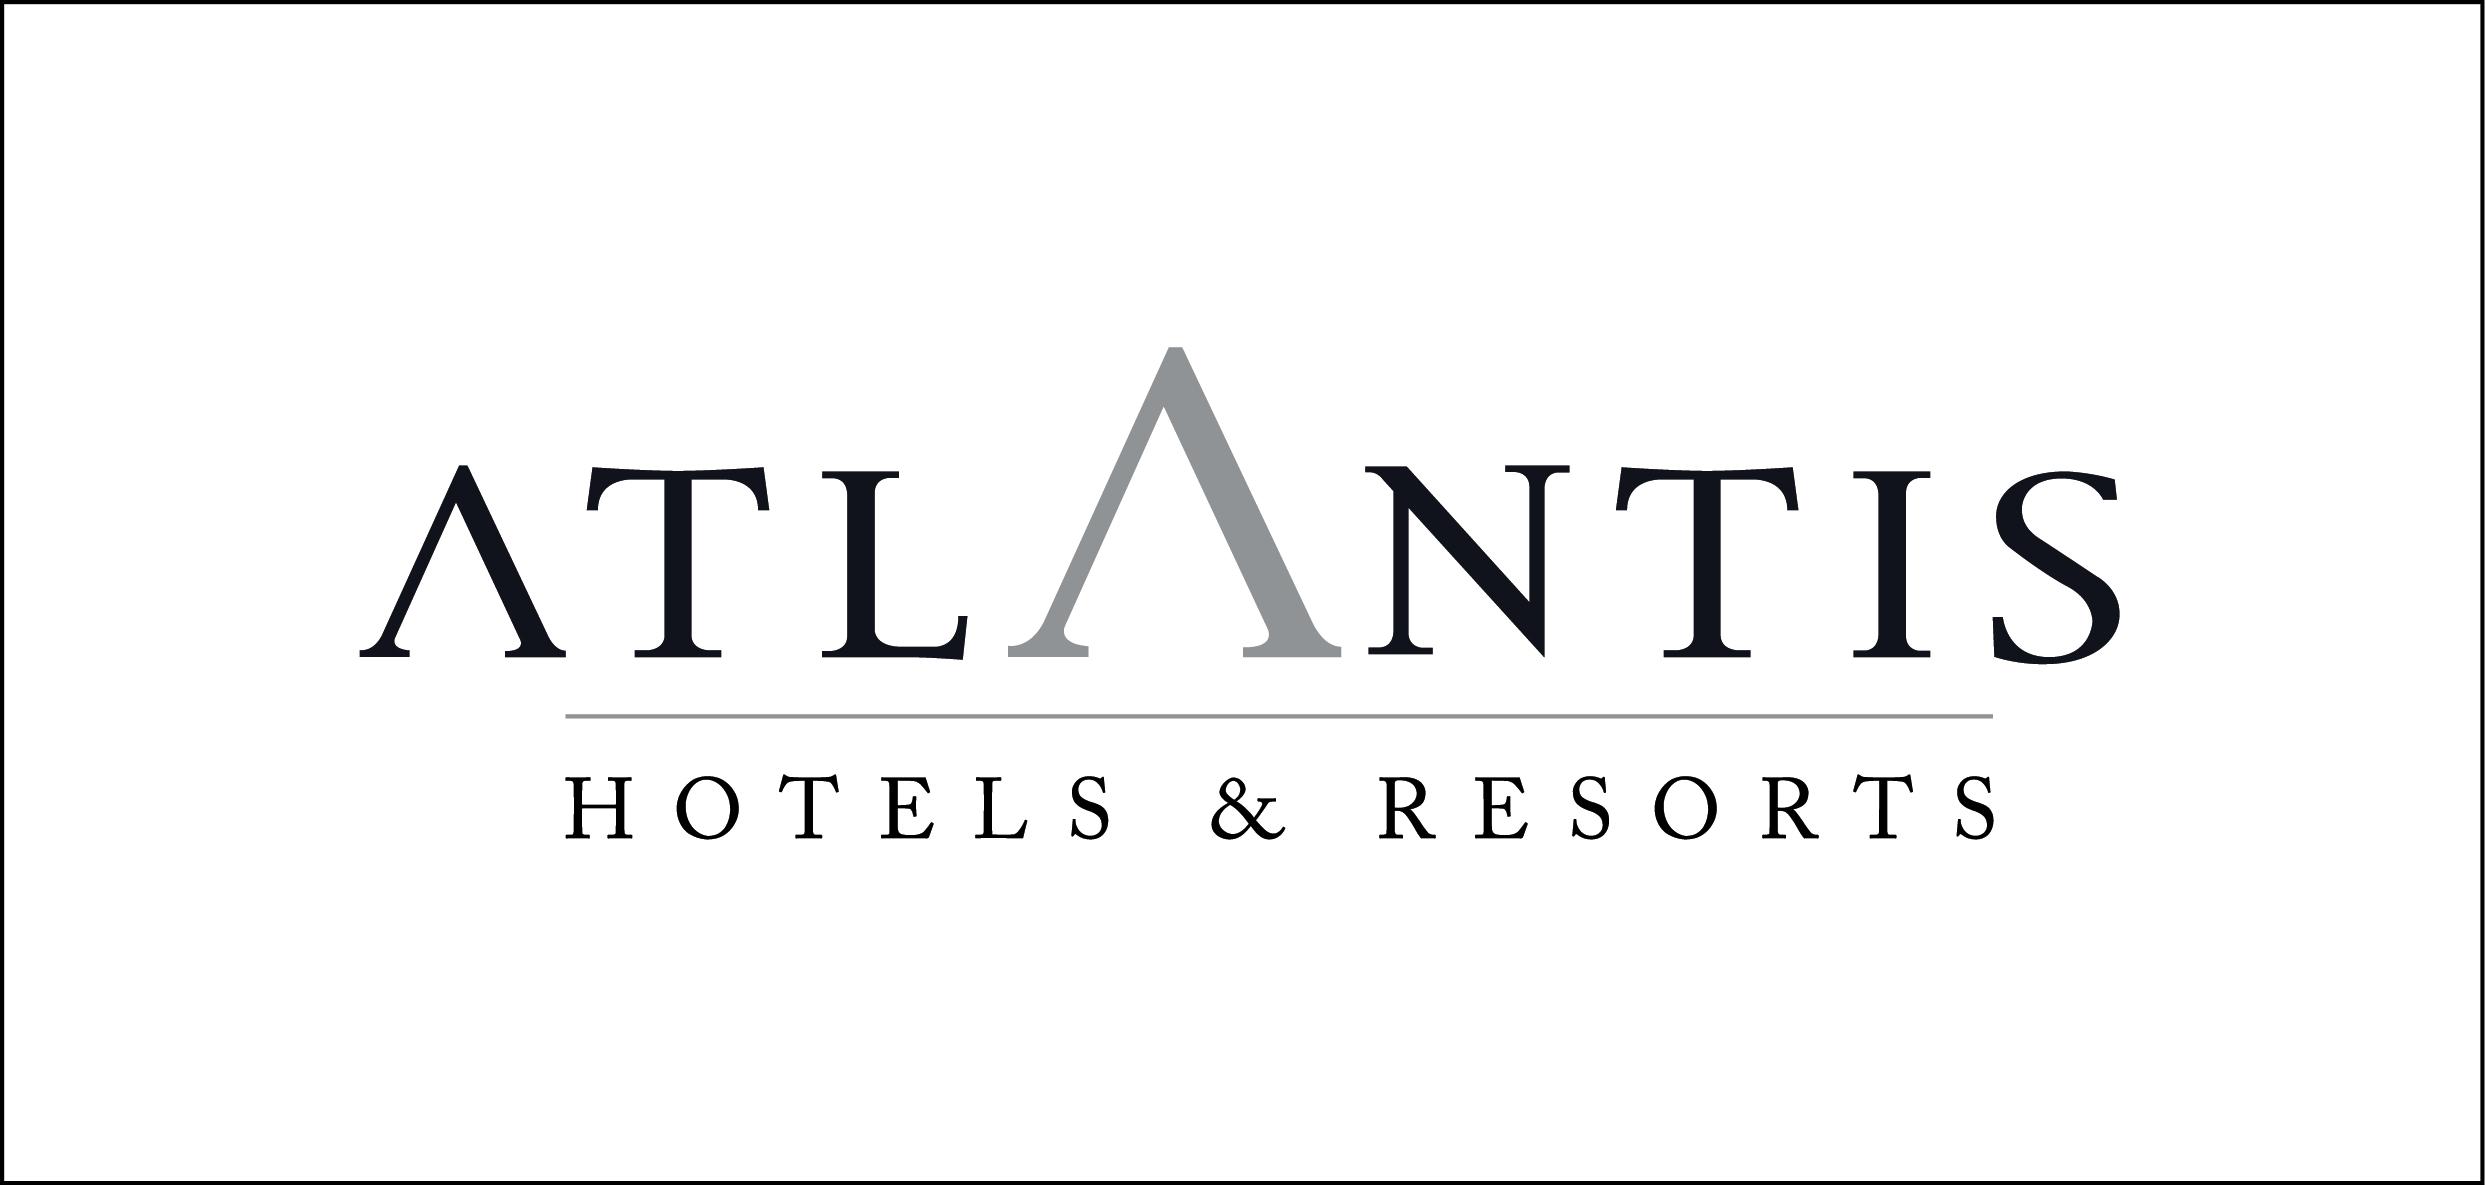 Gran Hotel Atlantis Bahia Real in Corralejo, Fuert